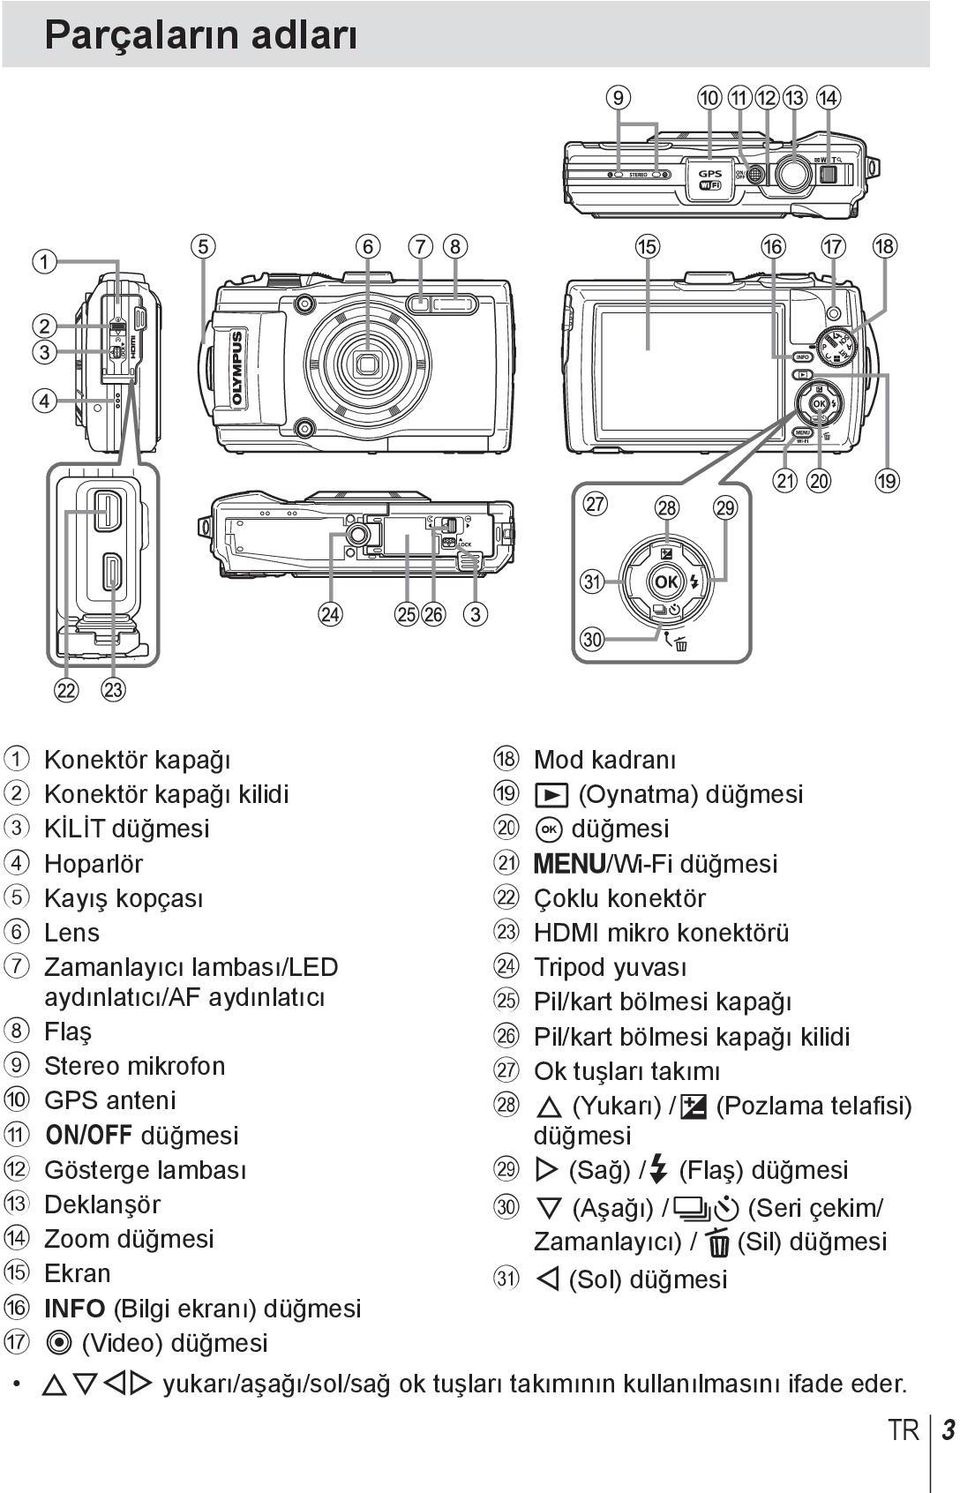 k /Wi-Fi düğmesi l Çoklu konektör m HDMI mikro konektörü n Tripod yuvası o Pil/kart bölmesi kapağı p Pil/kart bölmesi kapağı kilidi q Ok tuşları takımı r F (Yukarı) / F (Pozlama